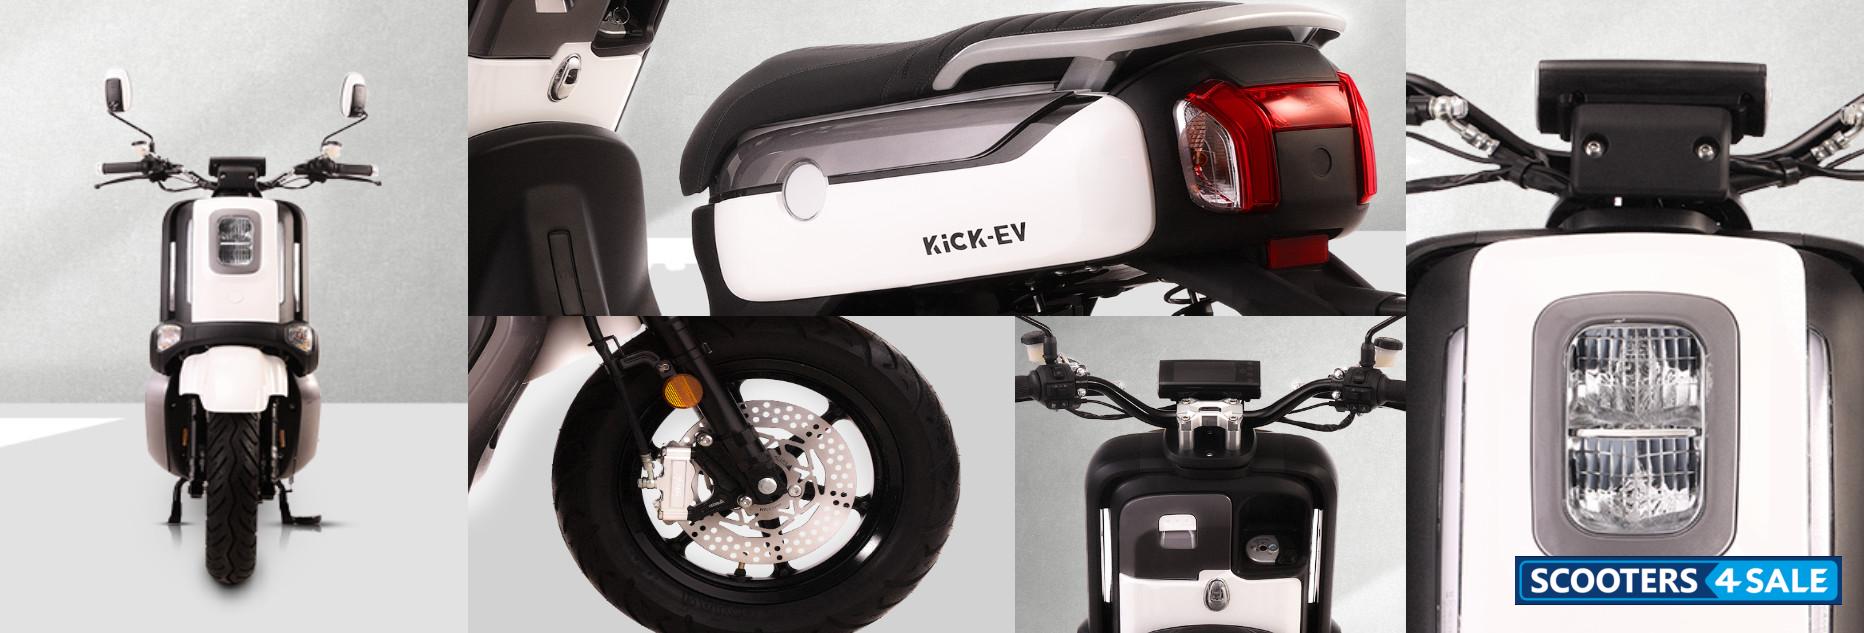 Kick EV Smassh - Features